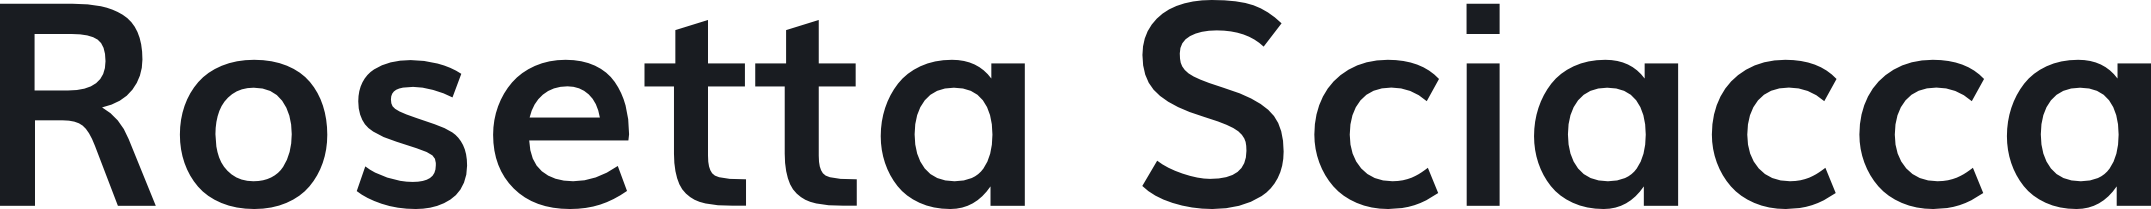 Rosetta Sciacca Logo